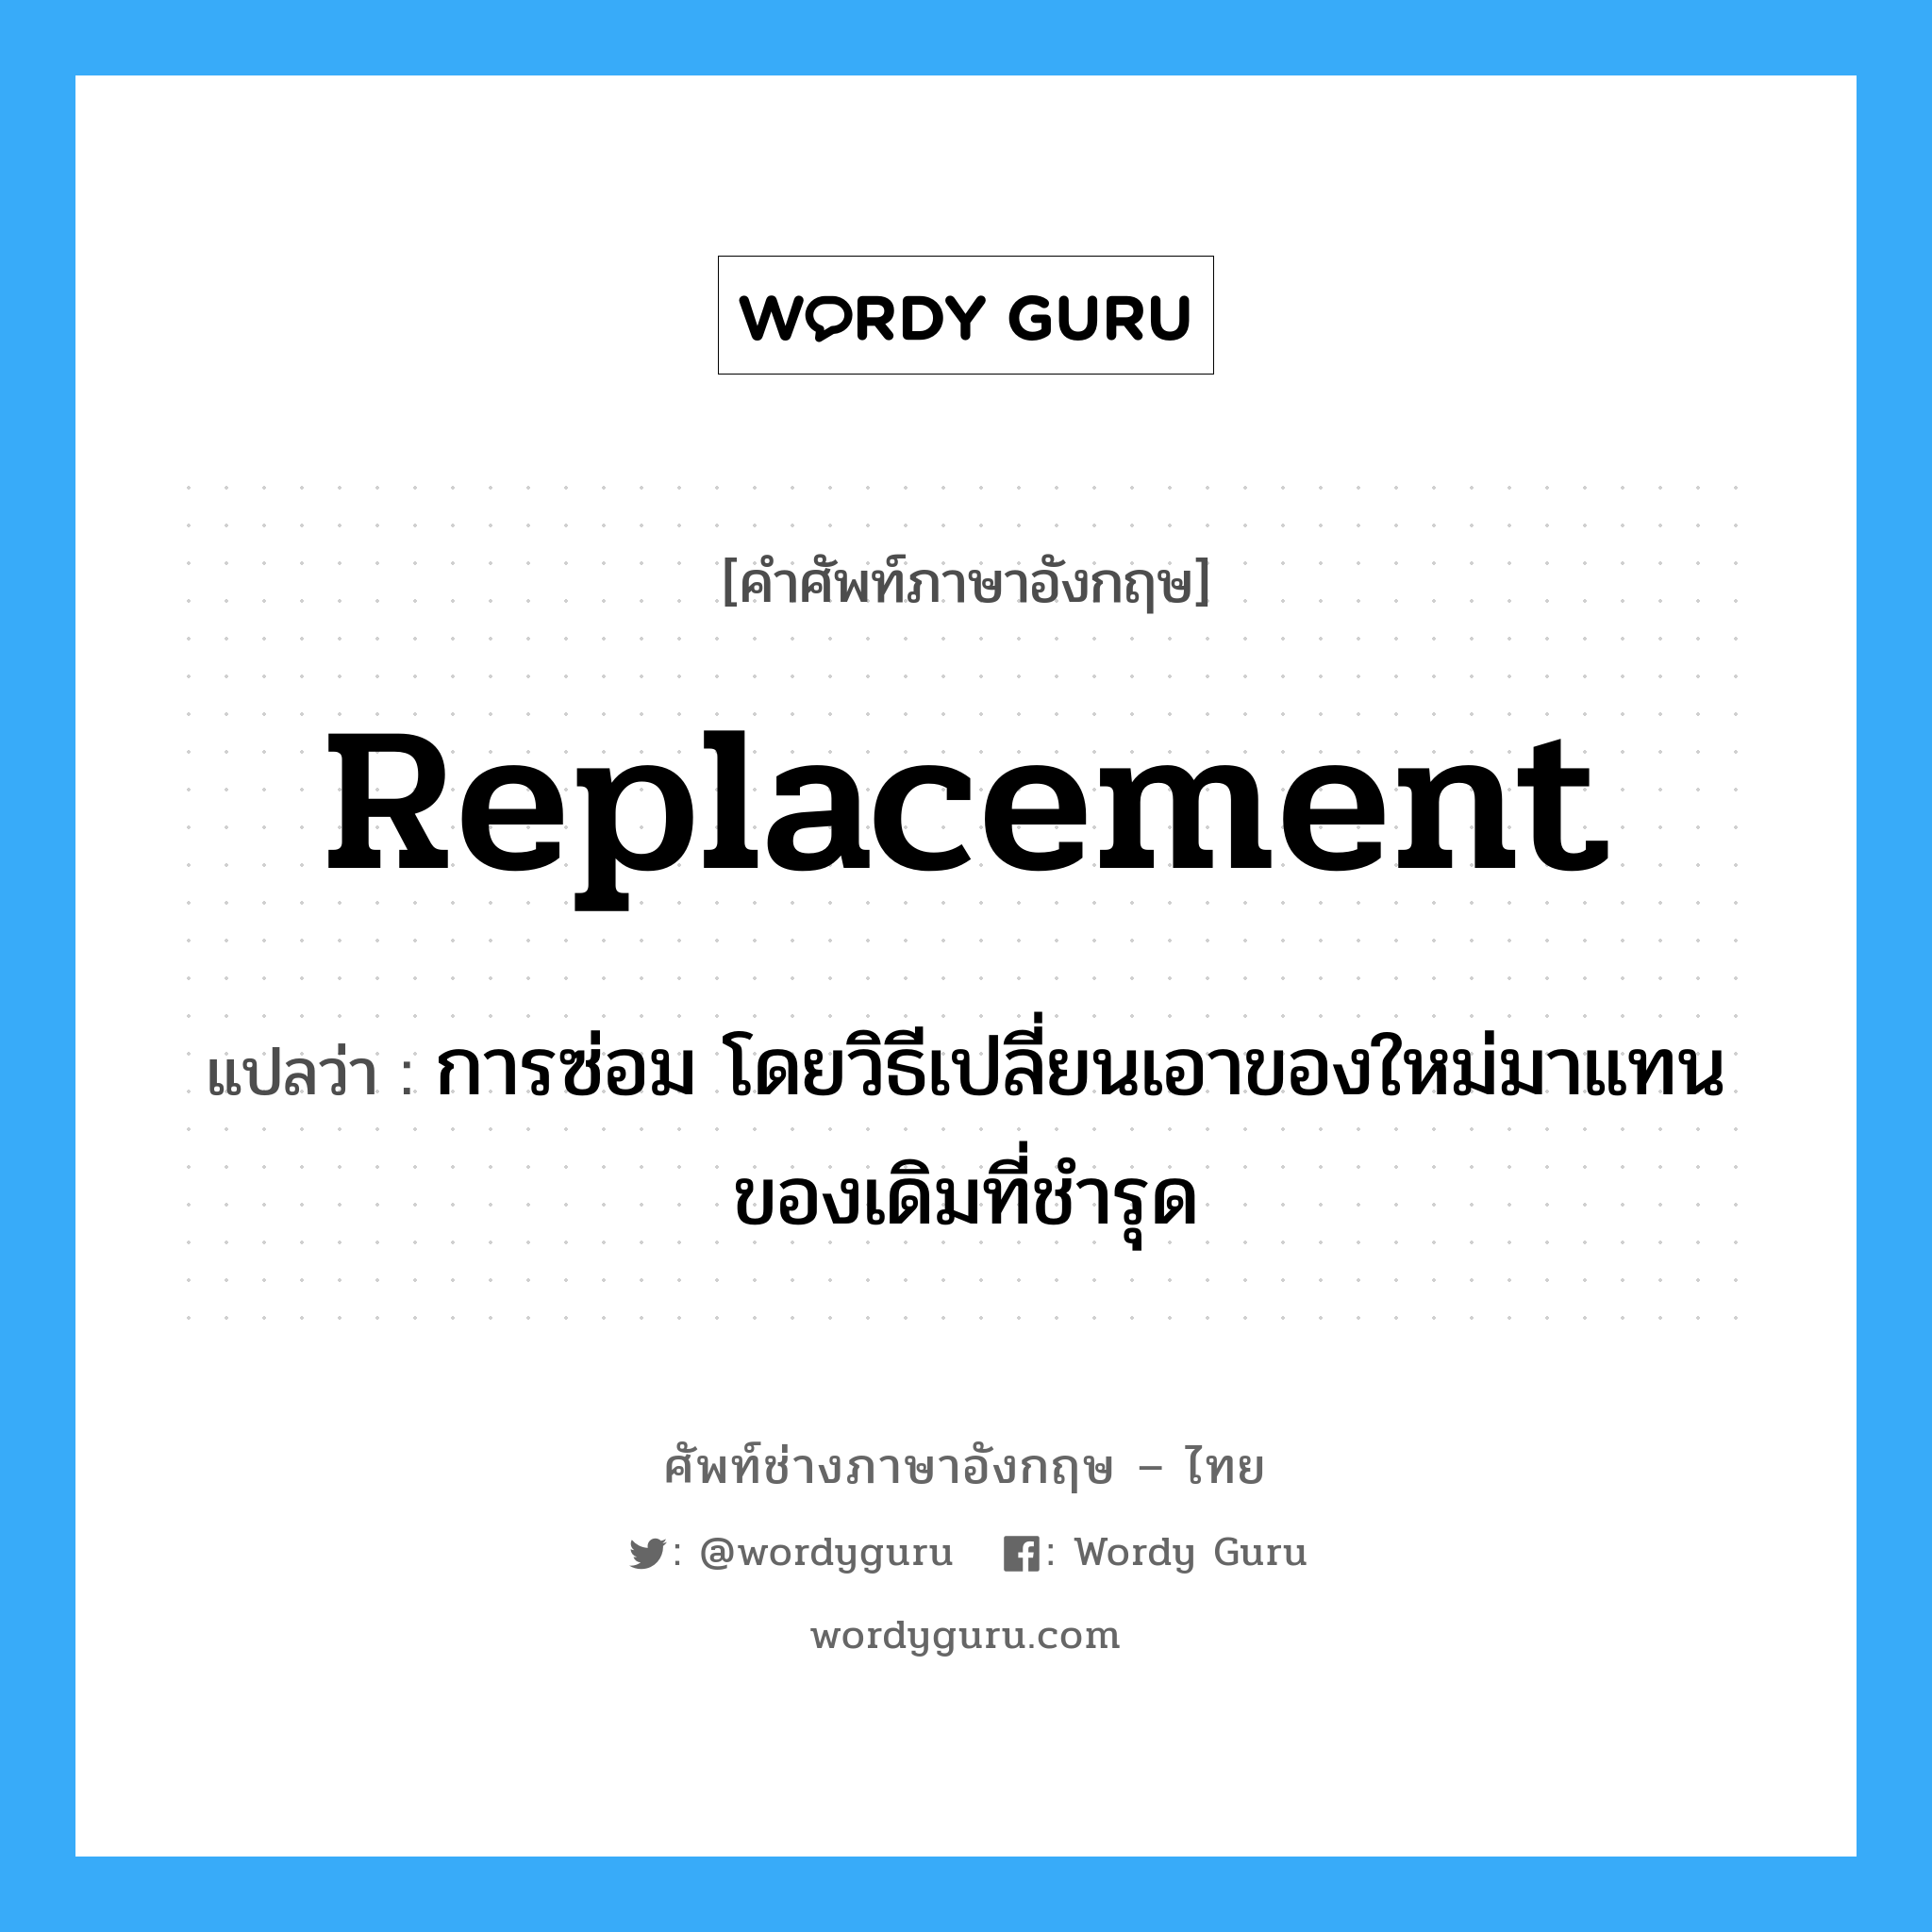 replacement แปลว่า?, คำศัพท์ช่างภาษาอังกฤษ - ไทย replacement คำศัพท์ภาษาอังกฤษ replacement แปลว่า การซ่อม โดยวิธีเปลี่ยนเอาของใหม่มาแทนของเดิมที่ชำรุด